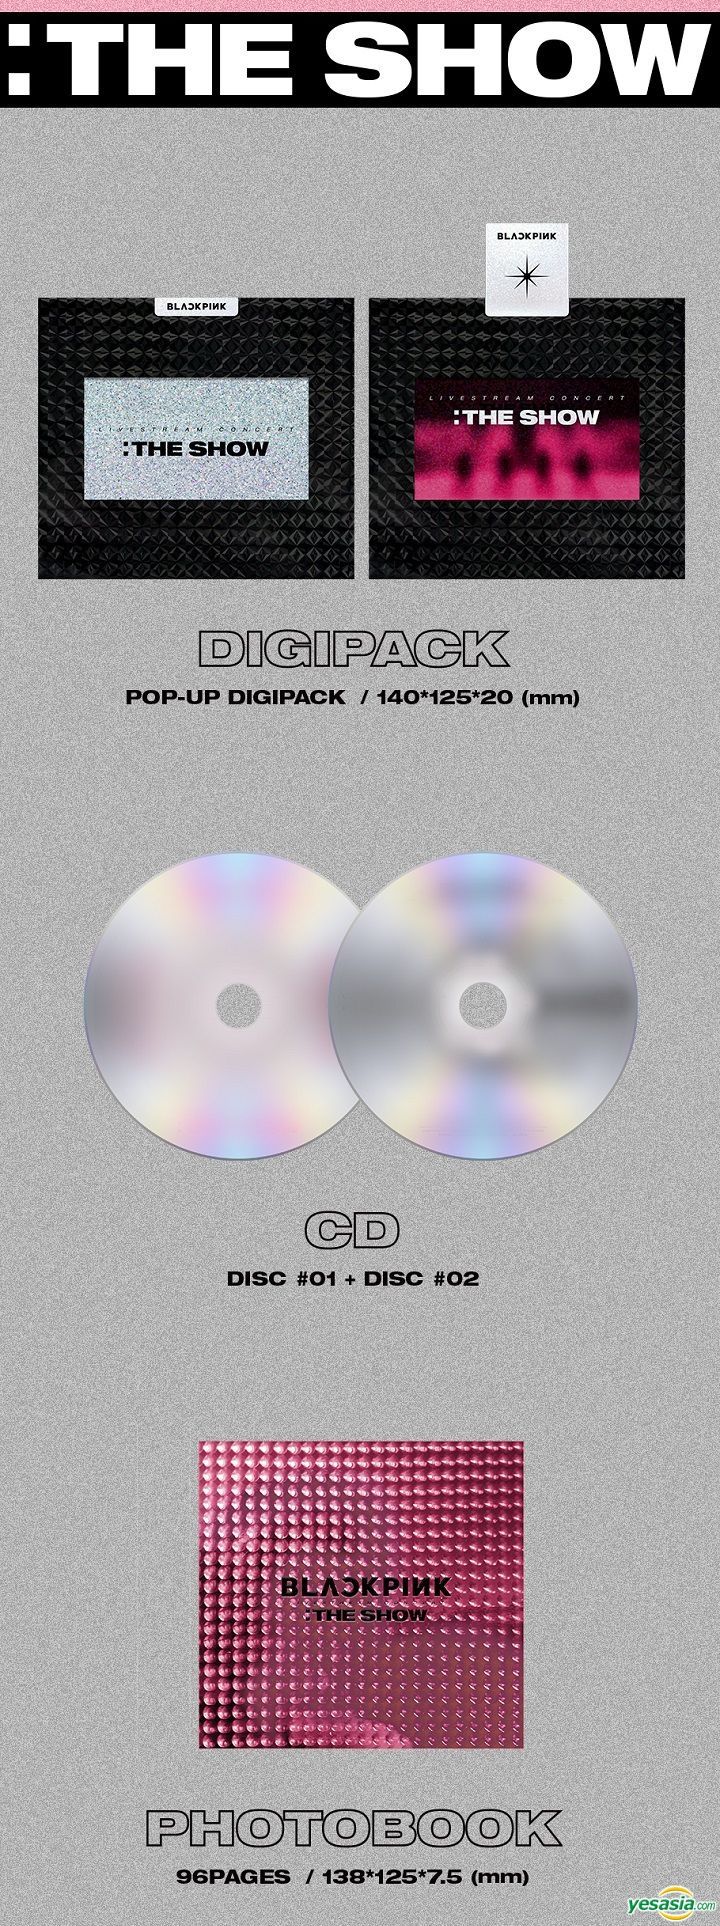 新品未開封 Blackpink The show CD - K-POP・アジア